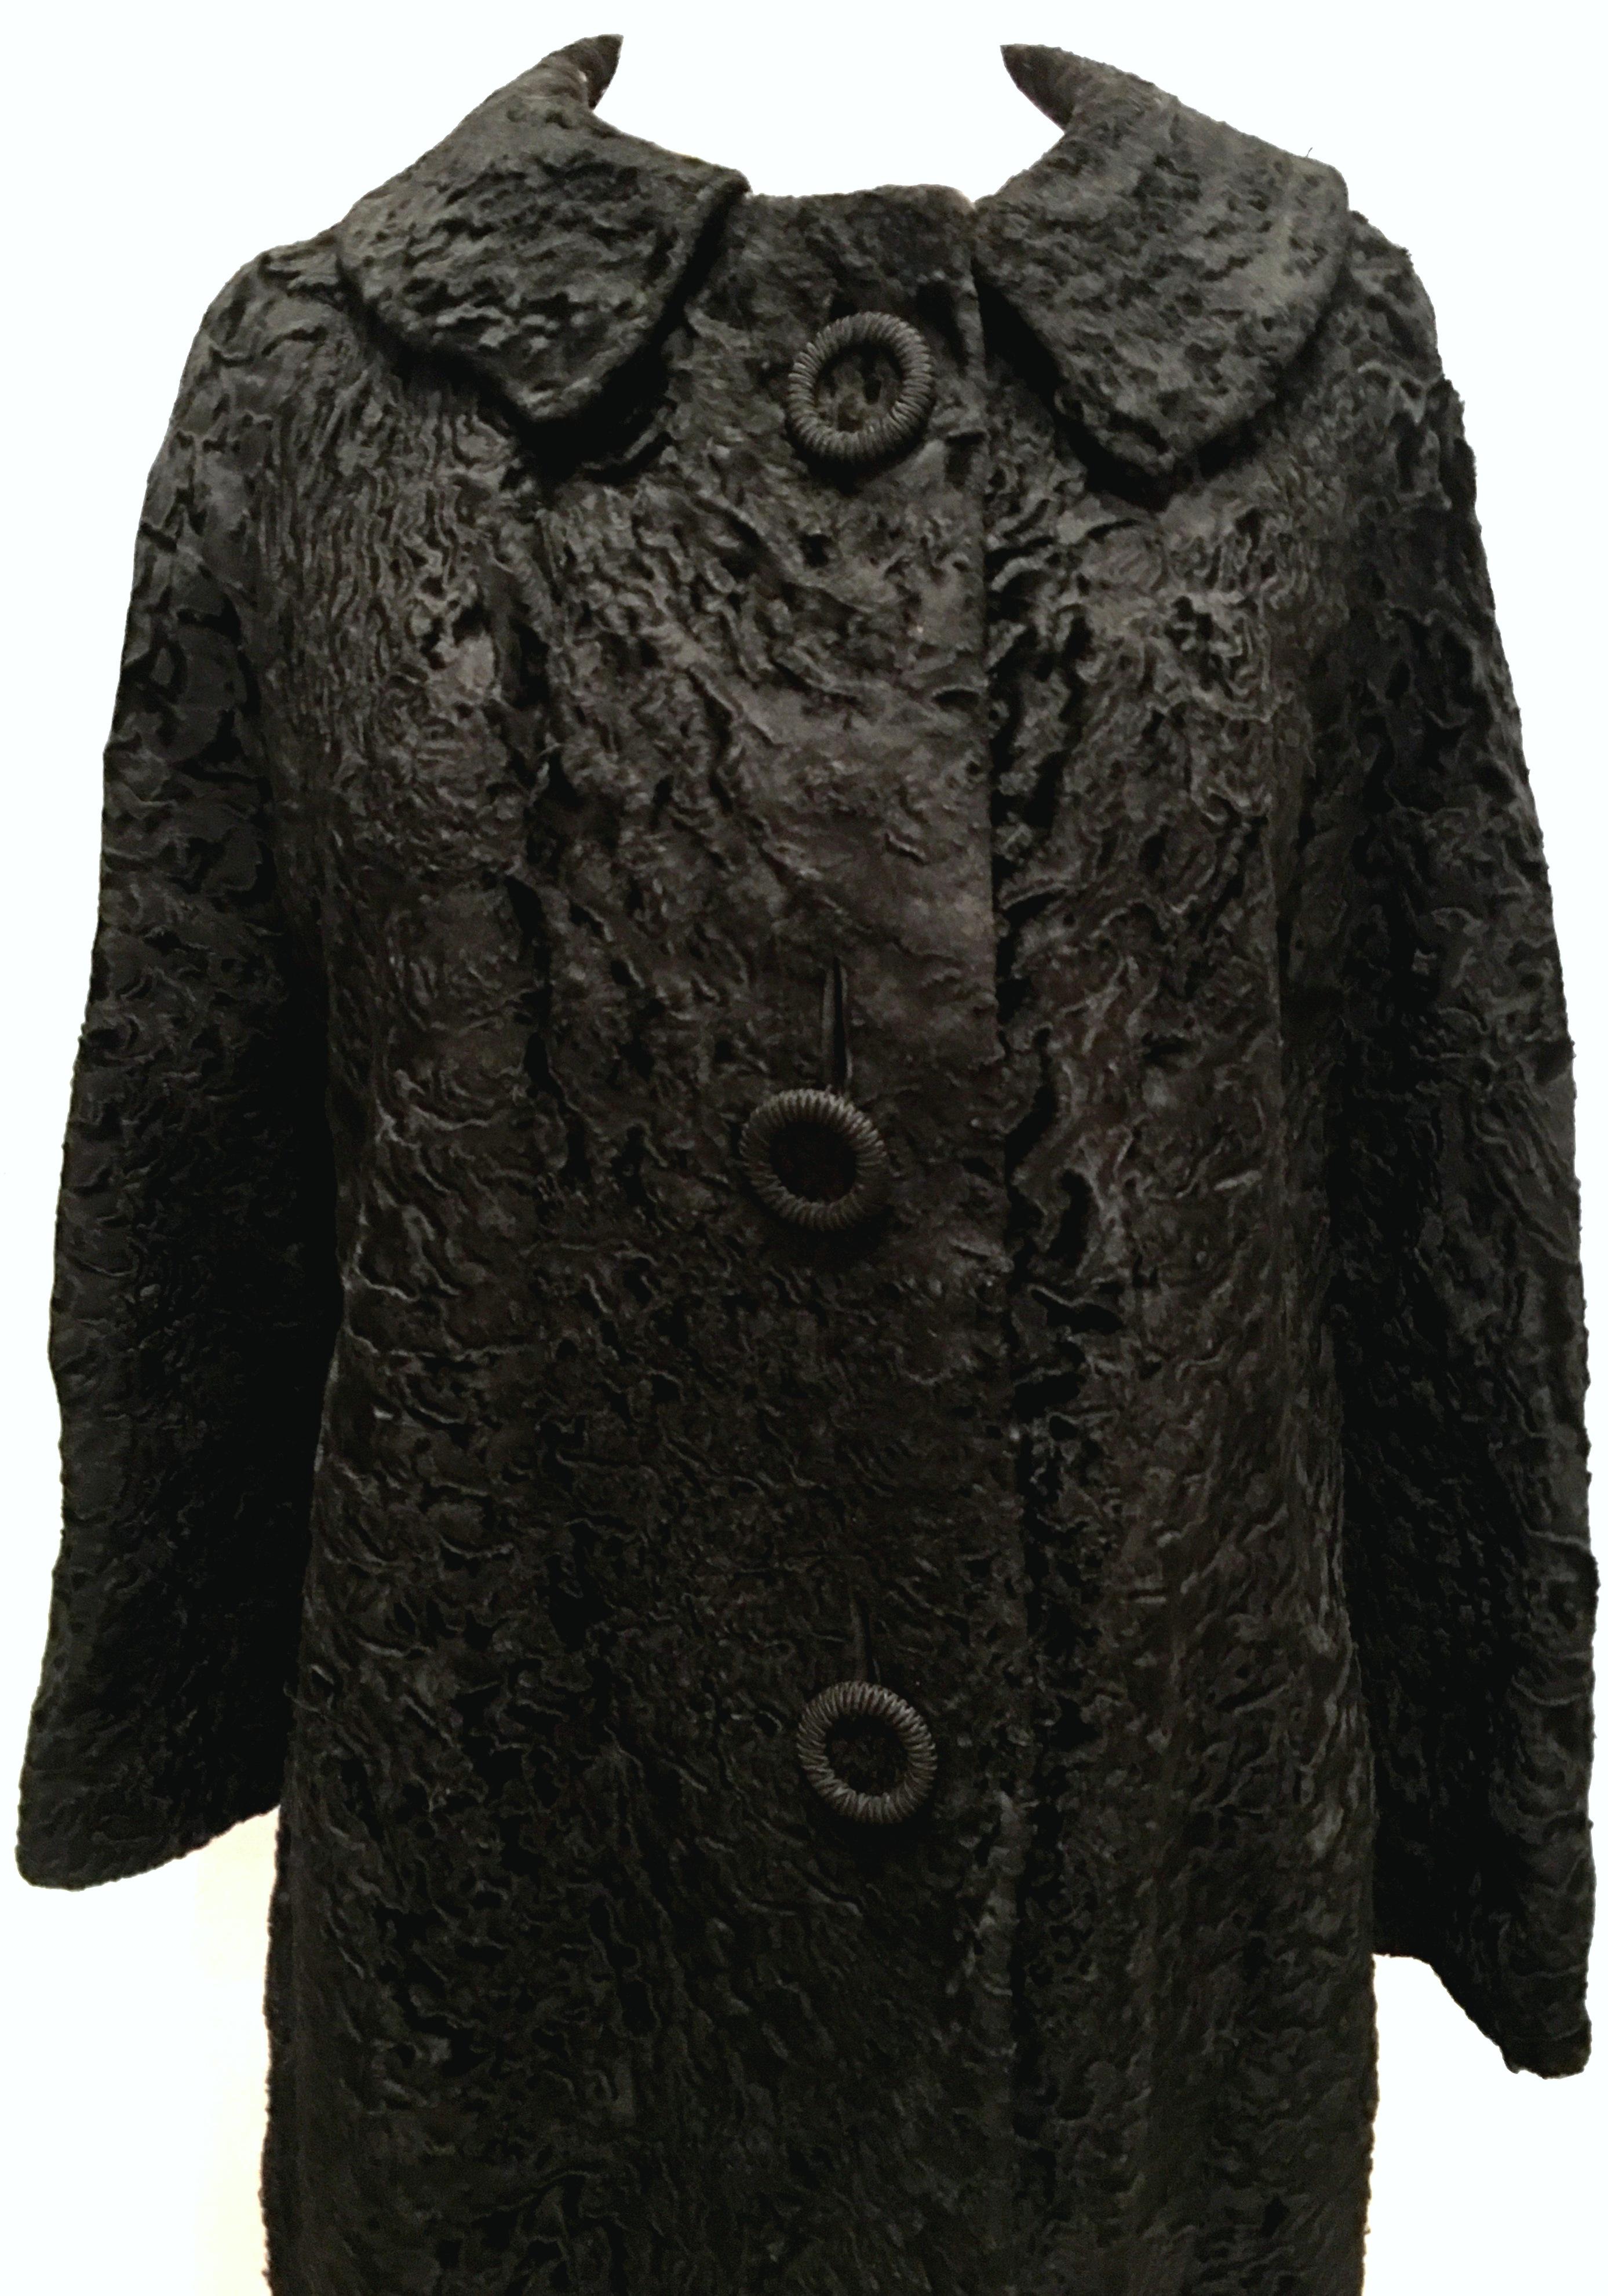 Women's or Men's 20th Century Sculptural Persian Jet Black Lamb Fur Swing Car Coat For Sale